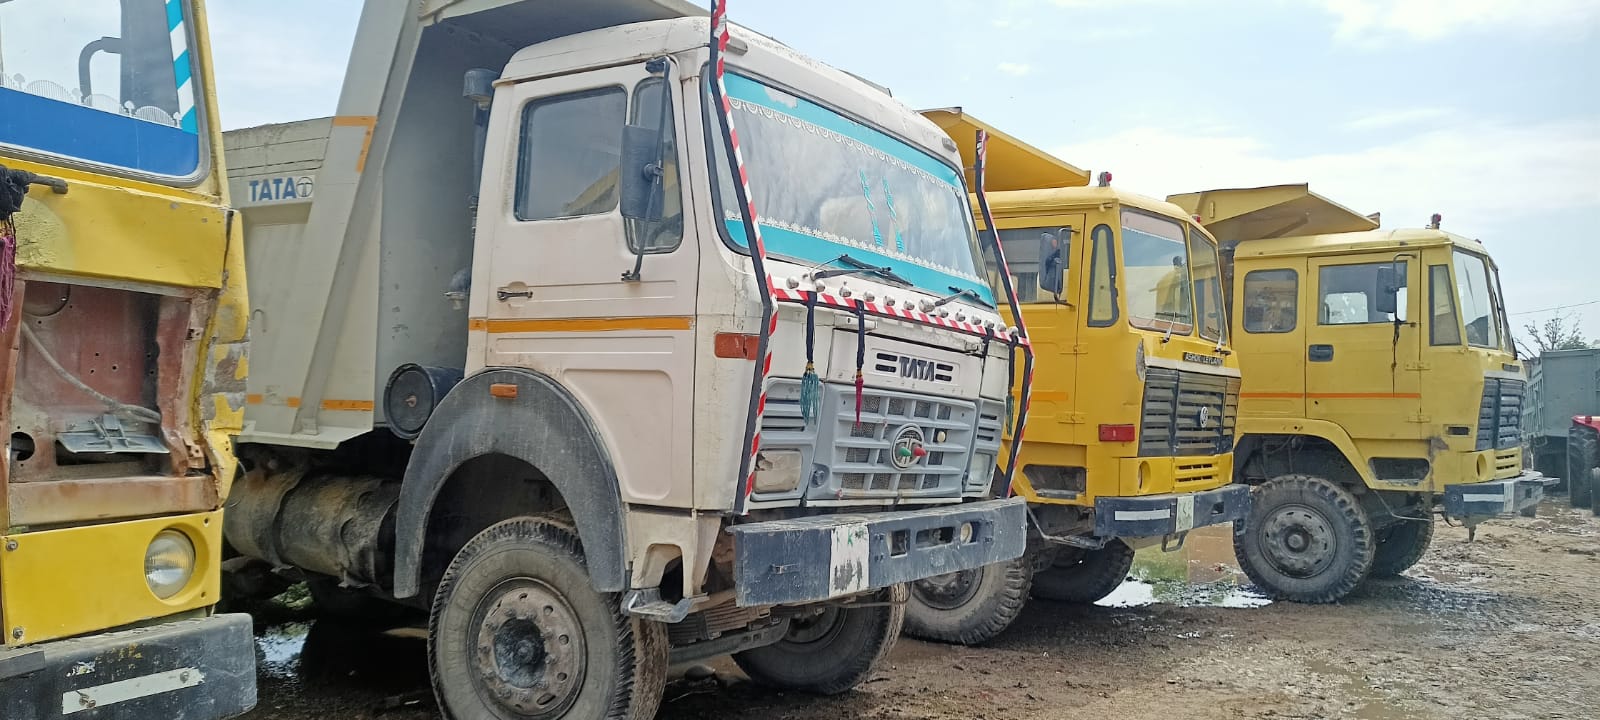 रामनगर: पीरूमदारा में खड़े डंपरों से बैटरी निकाल भागे चोर 